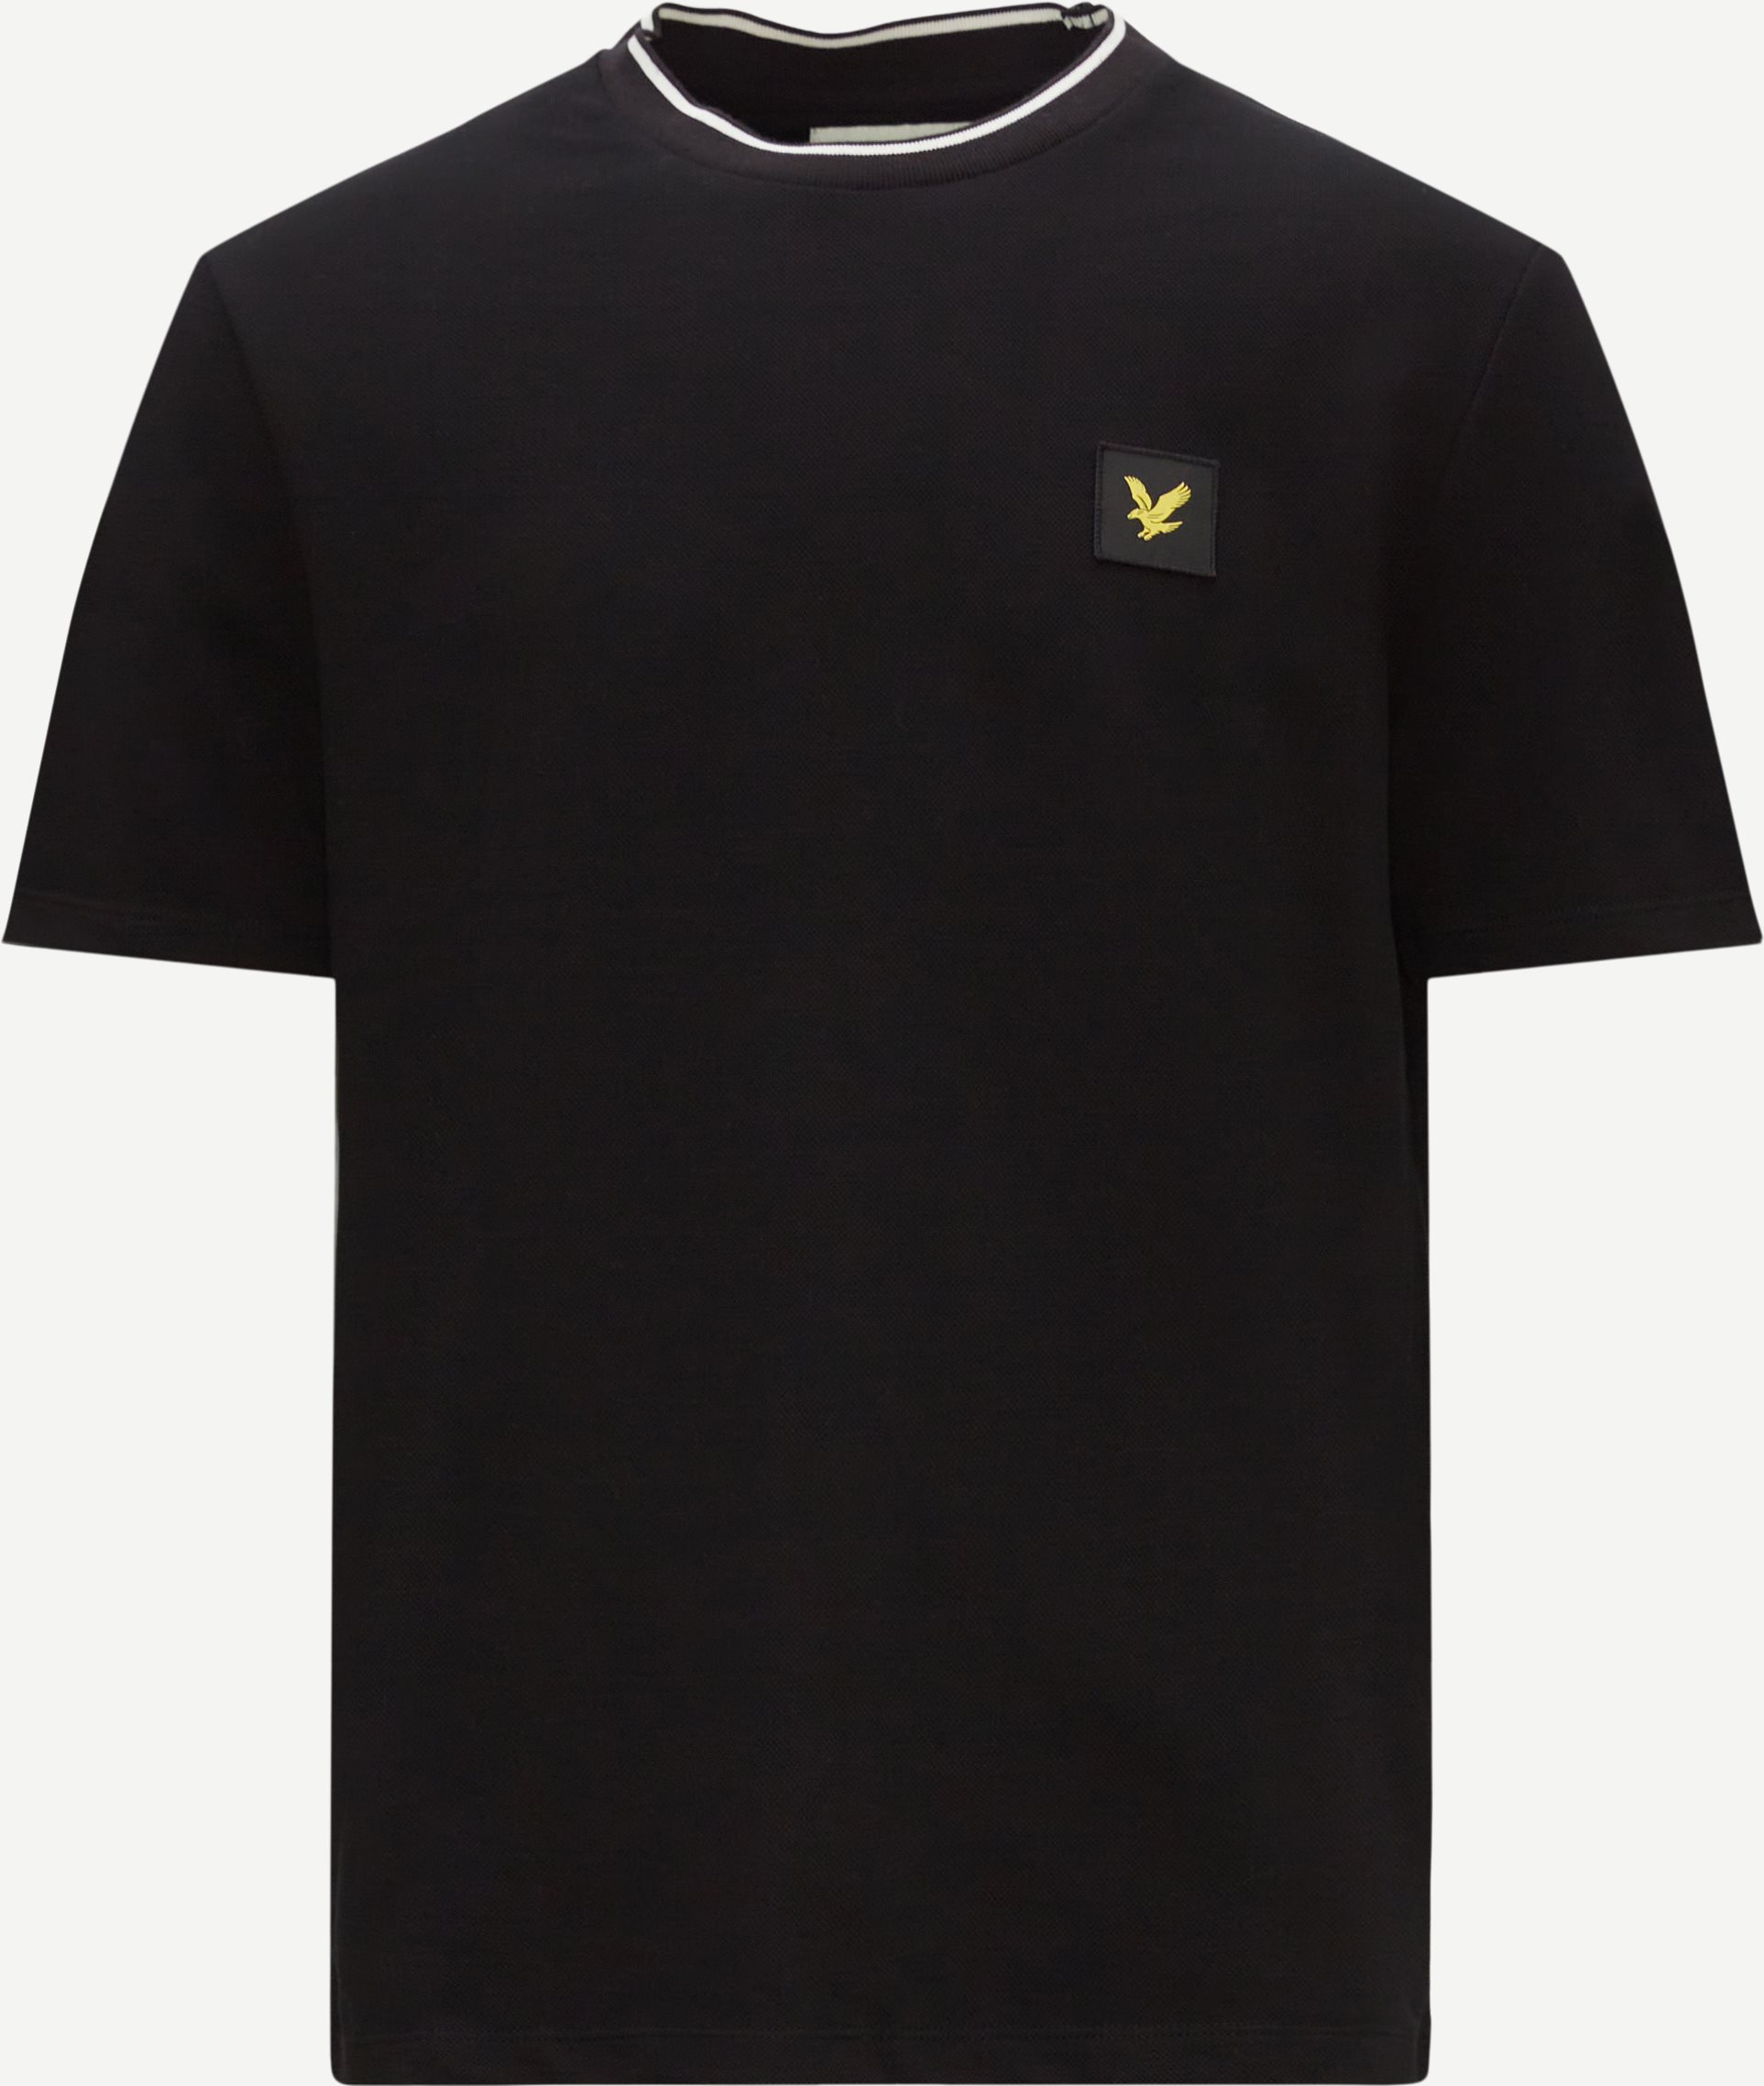 Lyle & Scott T-shirts TIPPED T-SHIRT TS1842V Black